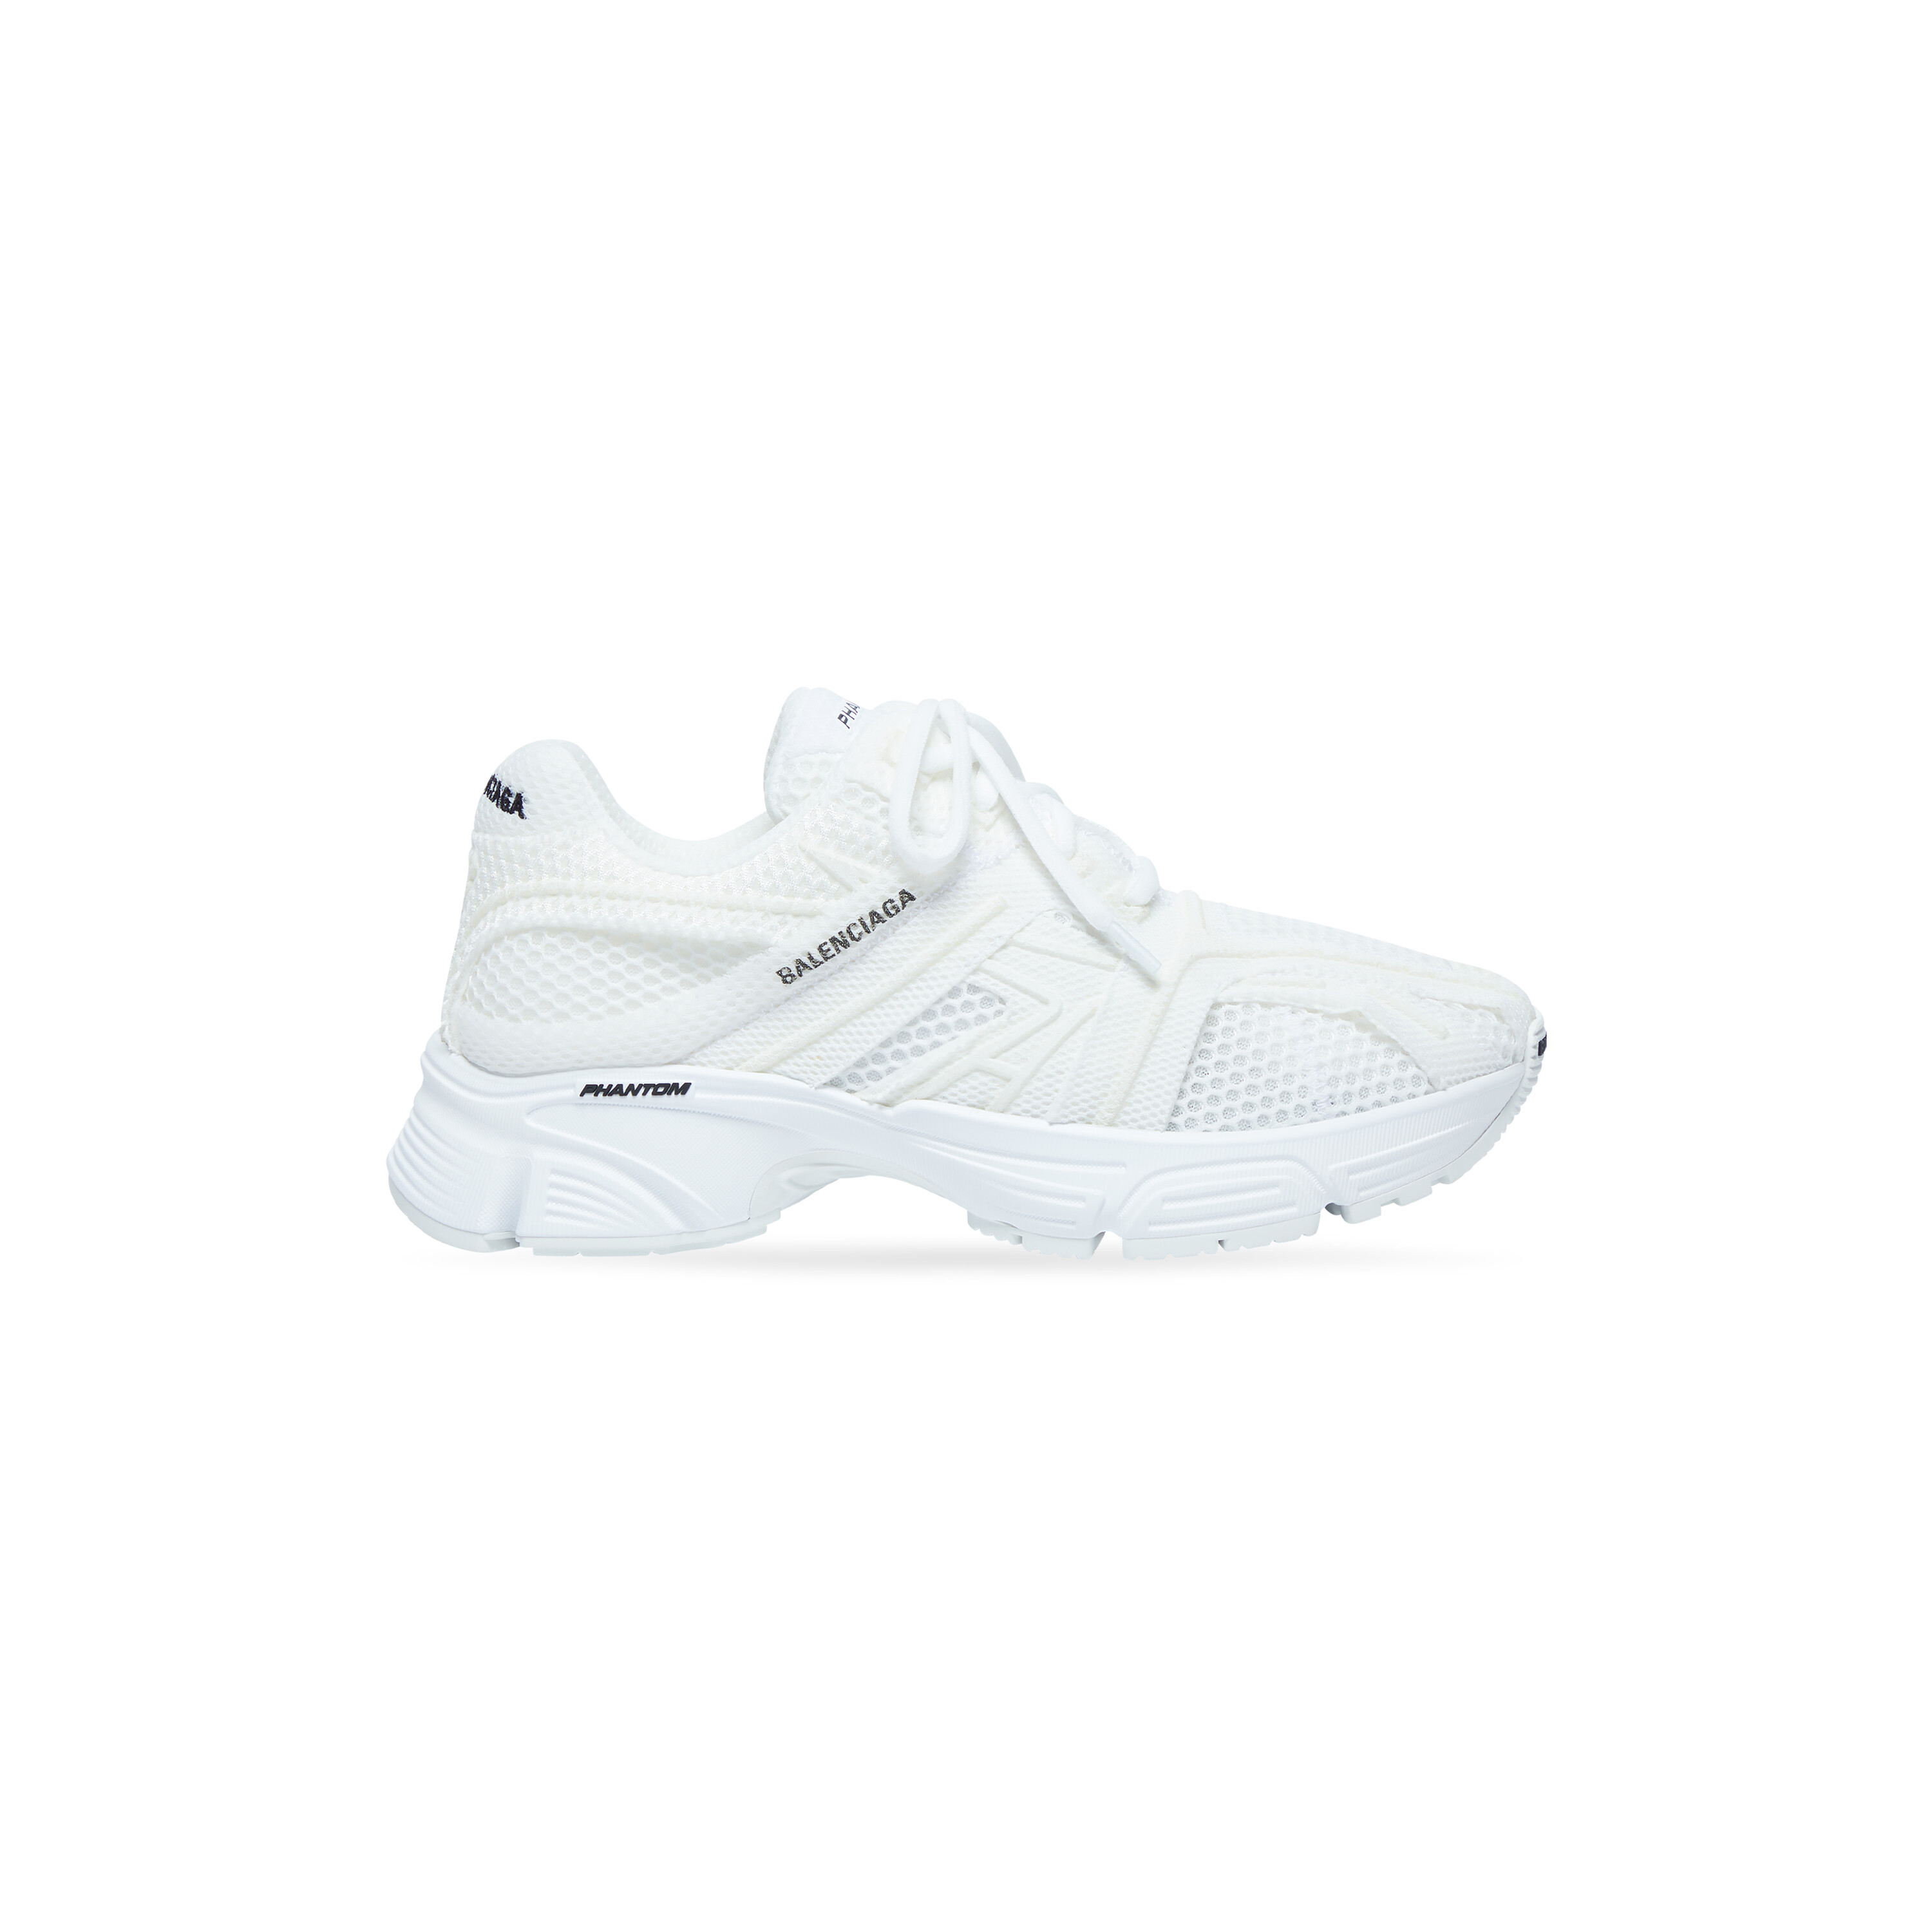 White Balenciaga TripleS Clear Sole Shoes